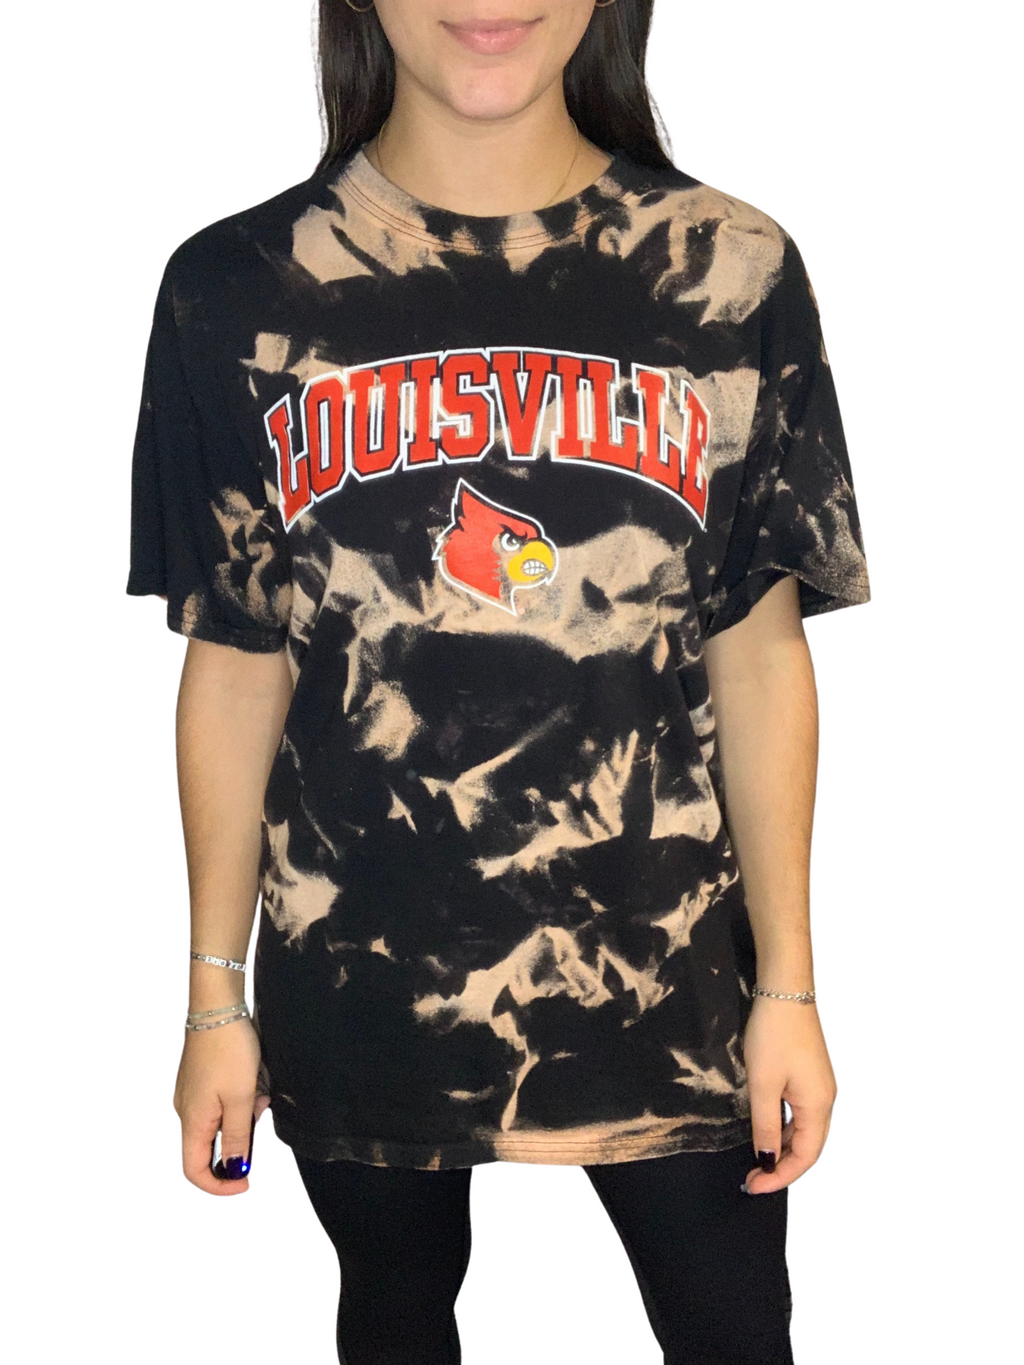 University of Louisville Tie Dye Shirt – Kampus Kustoms